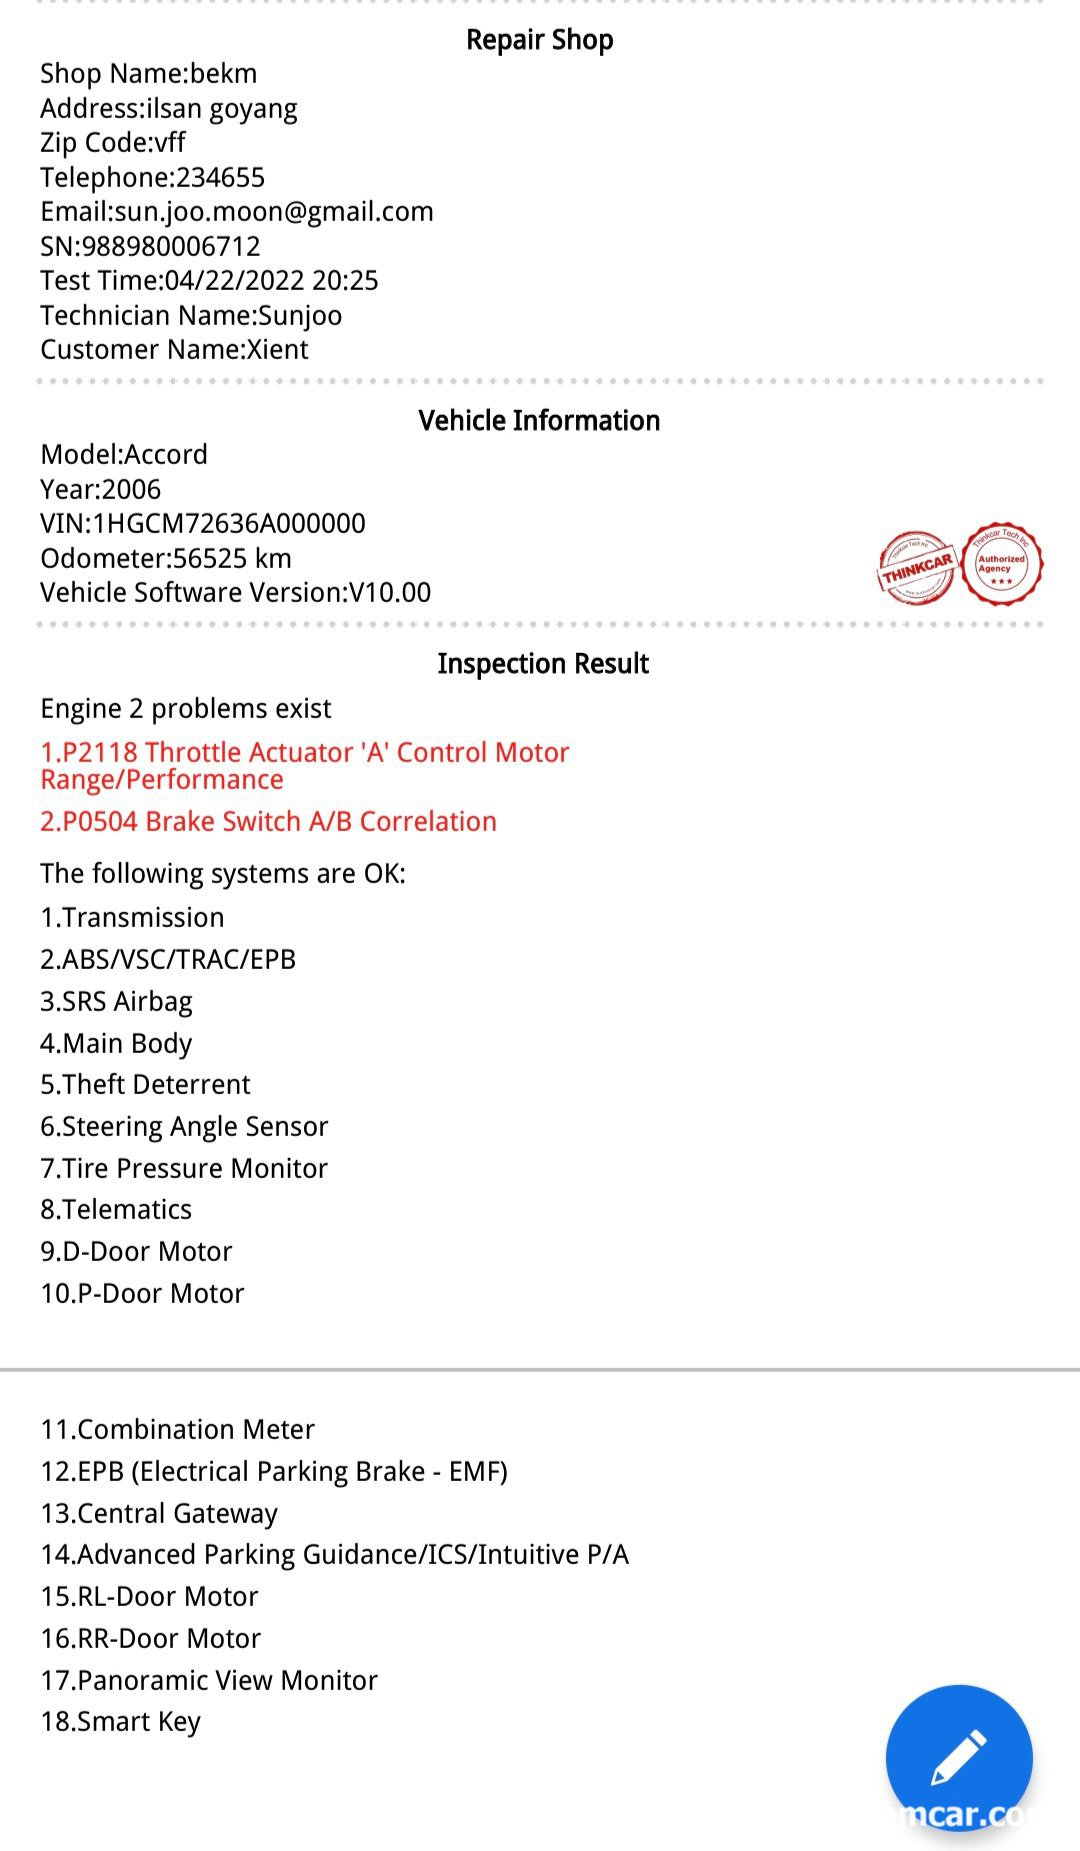 베콤카 기존 고객에 풀시스템 진단 차량건강보고서 무료 제공, 베콤카 차량건강검진 보고서 샘플이다. 지원하는 전장시스템을 전체 진단해서 고장코드가 있는경우 고장코드와 간단한 설명은 제공한다|بيكومكار  (bekomcar)